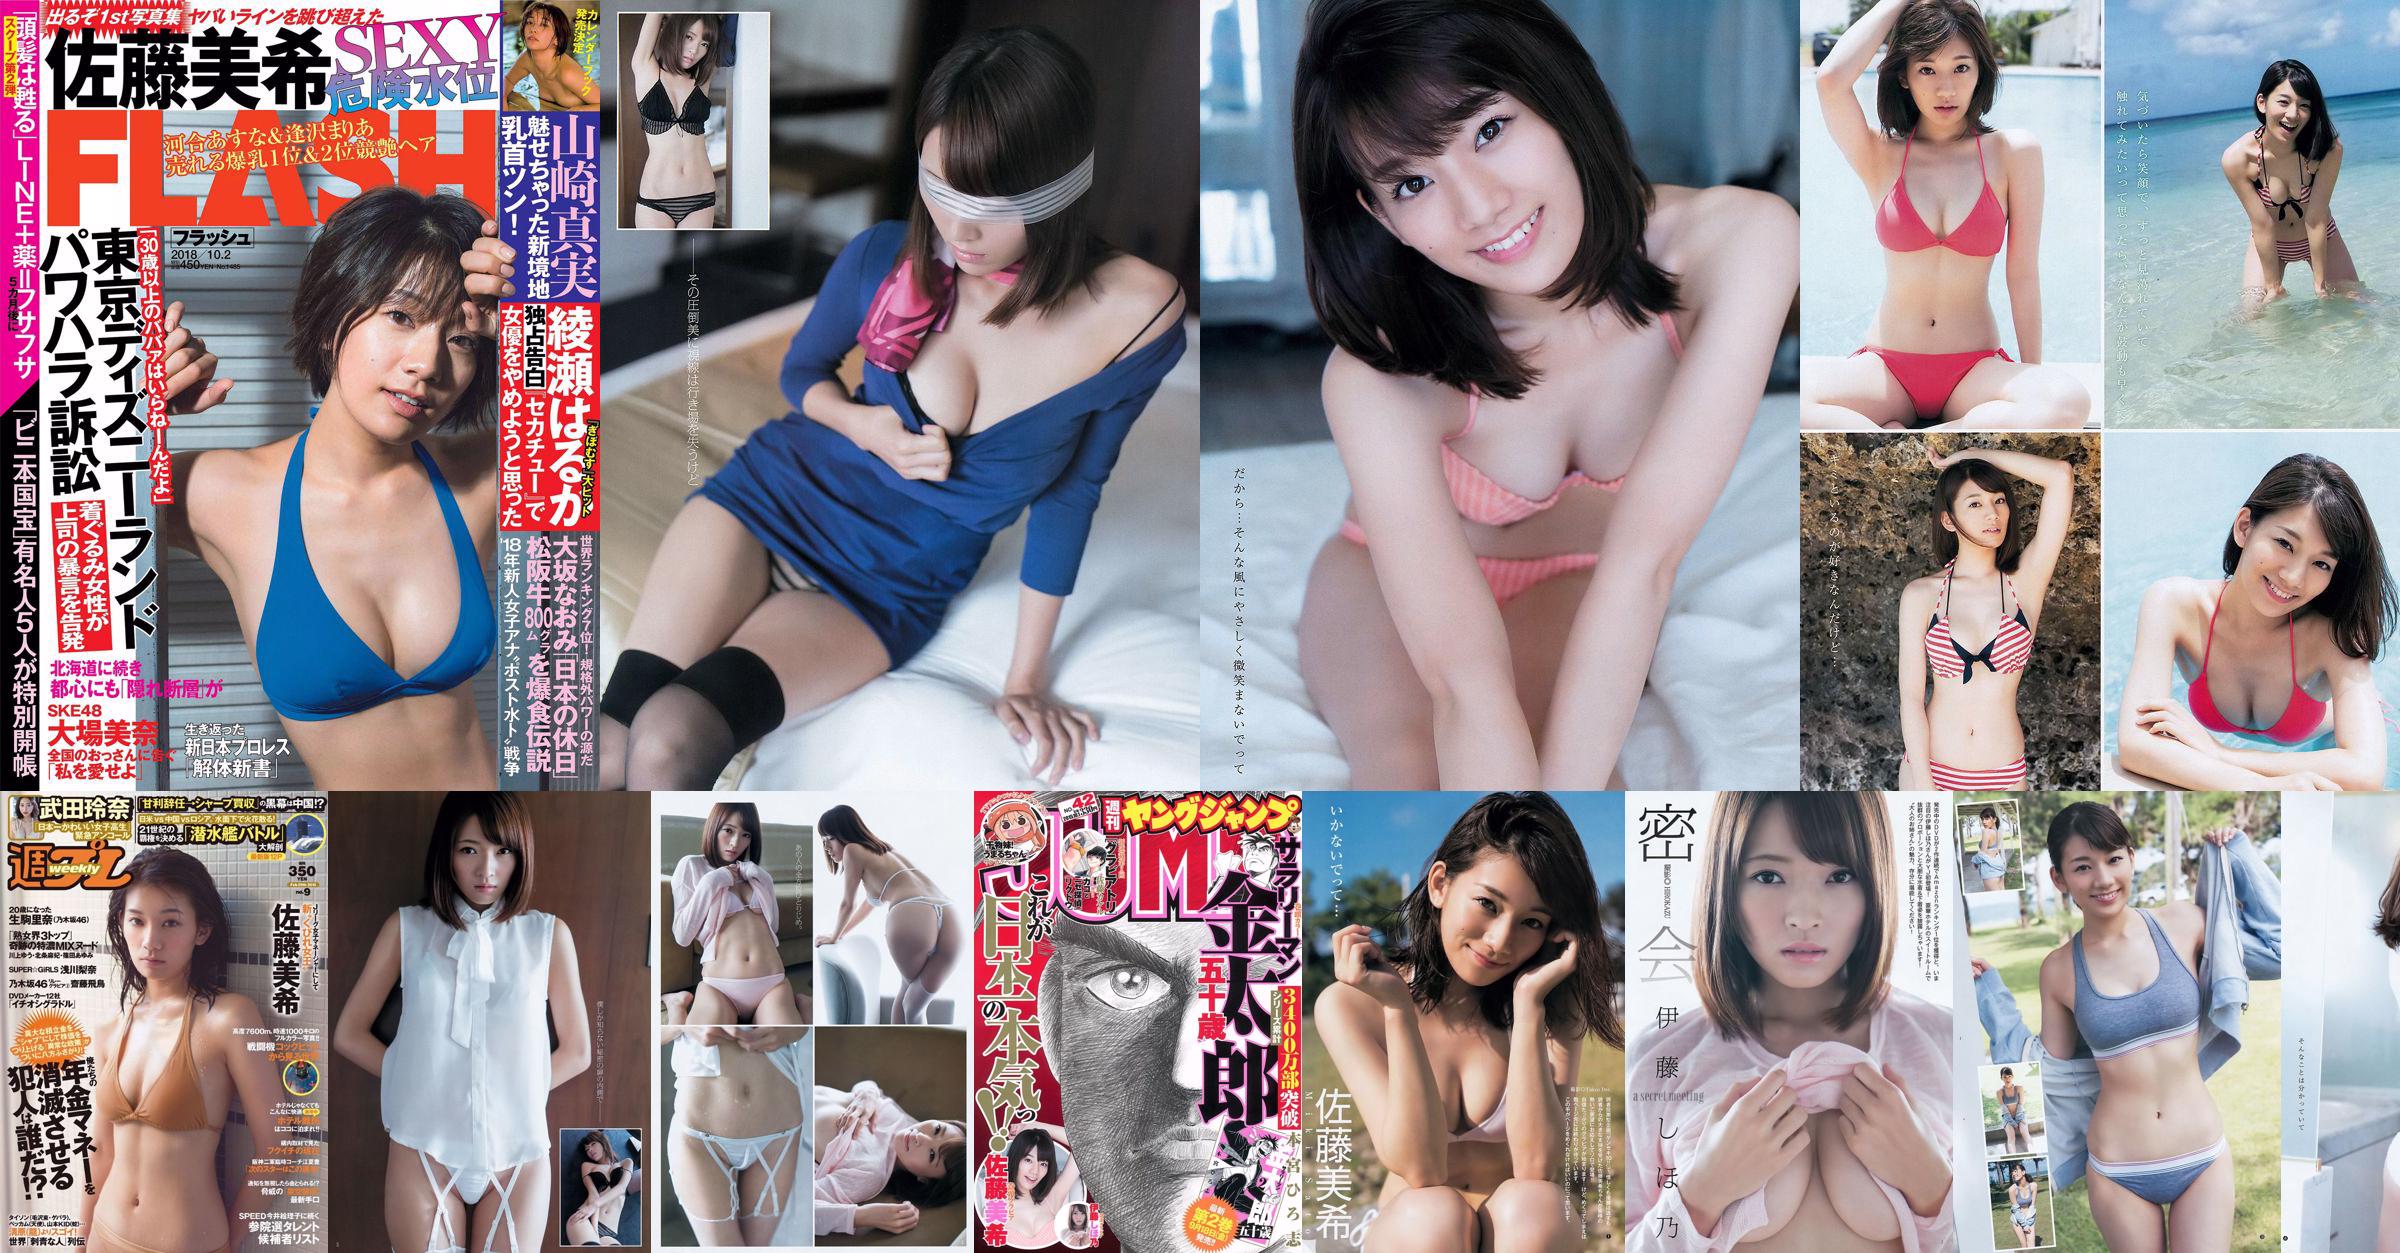 Sato Maki Ito Kayano [Weekly Young Jump] Magazine photo n ° 42 2015 No.5591cb Page 2